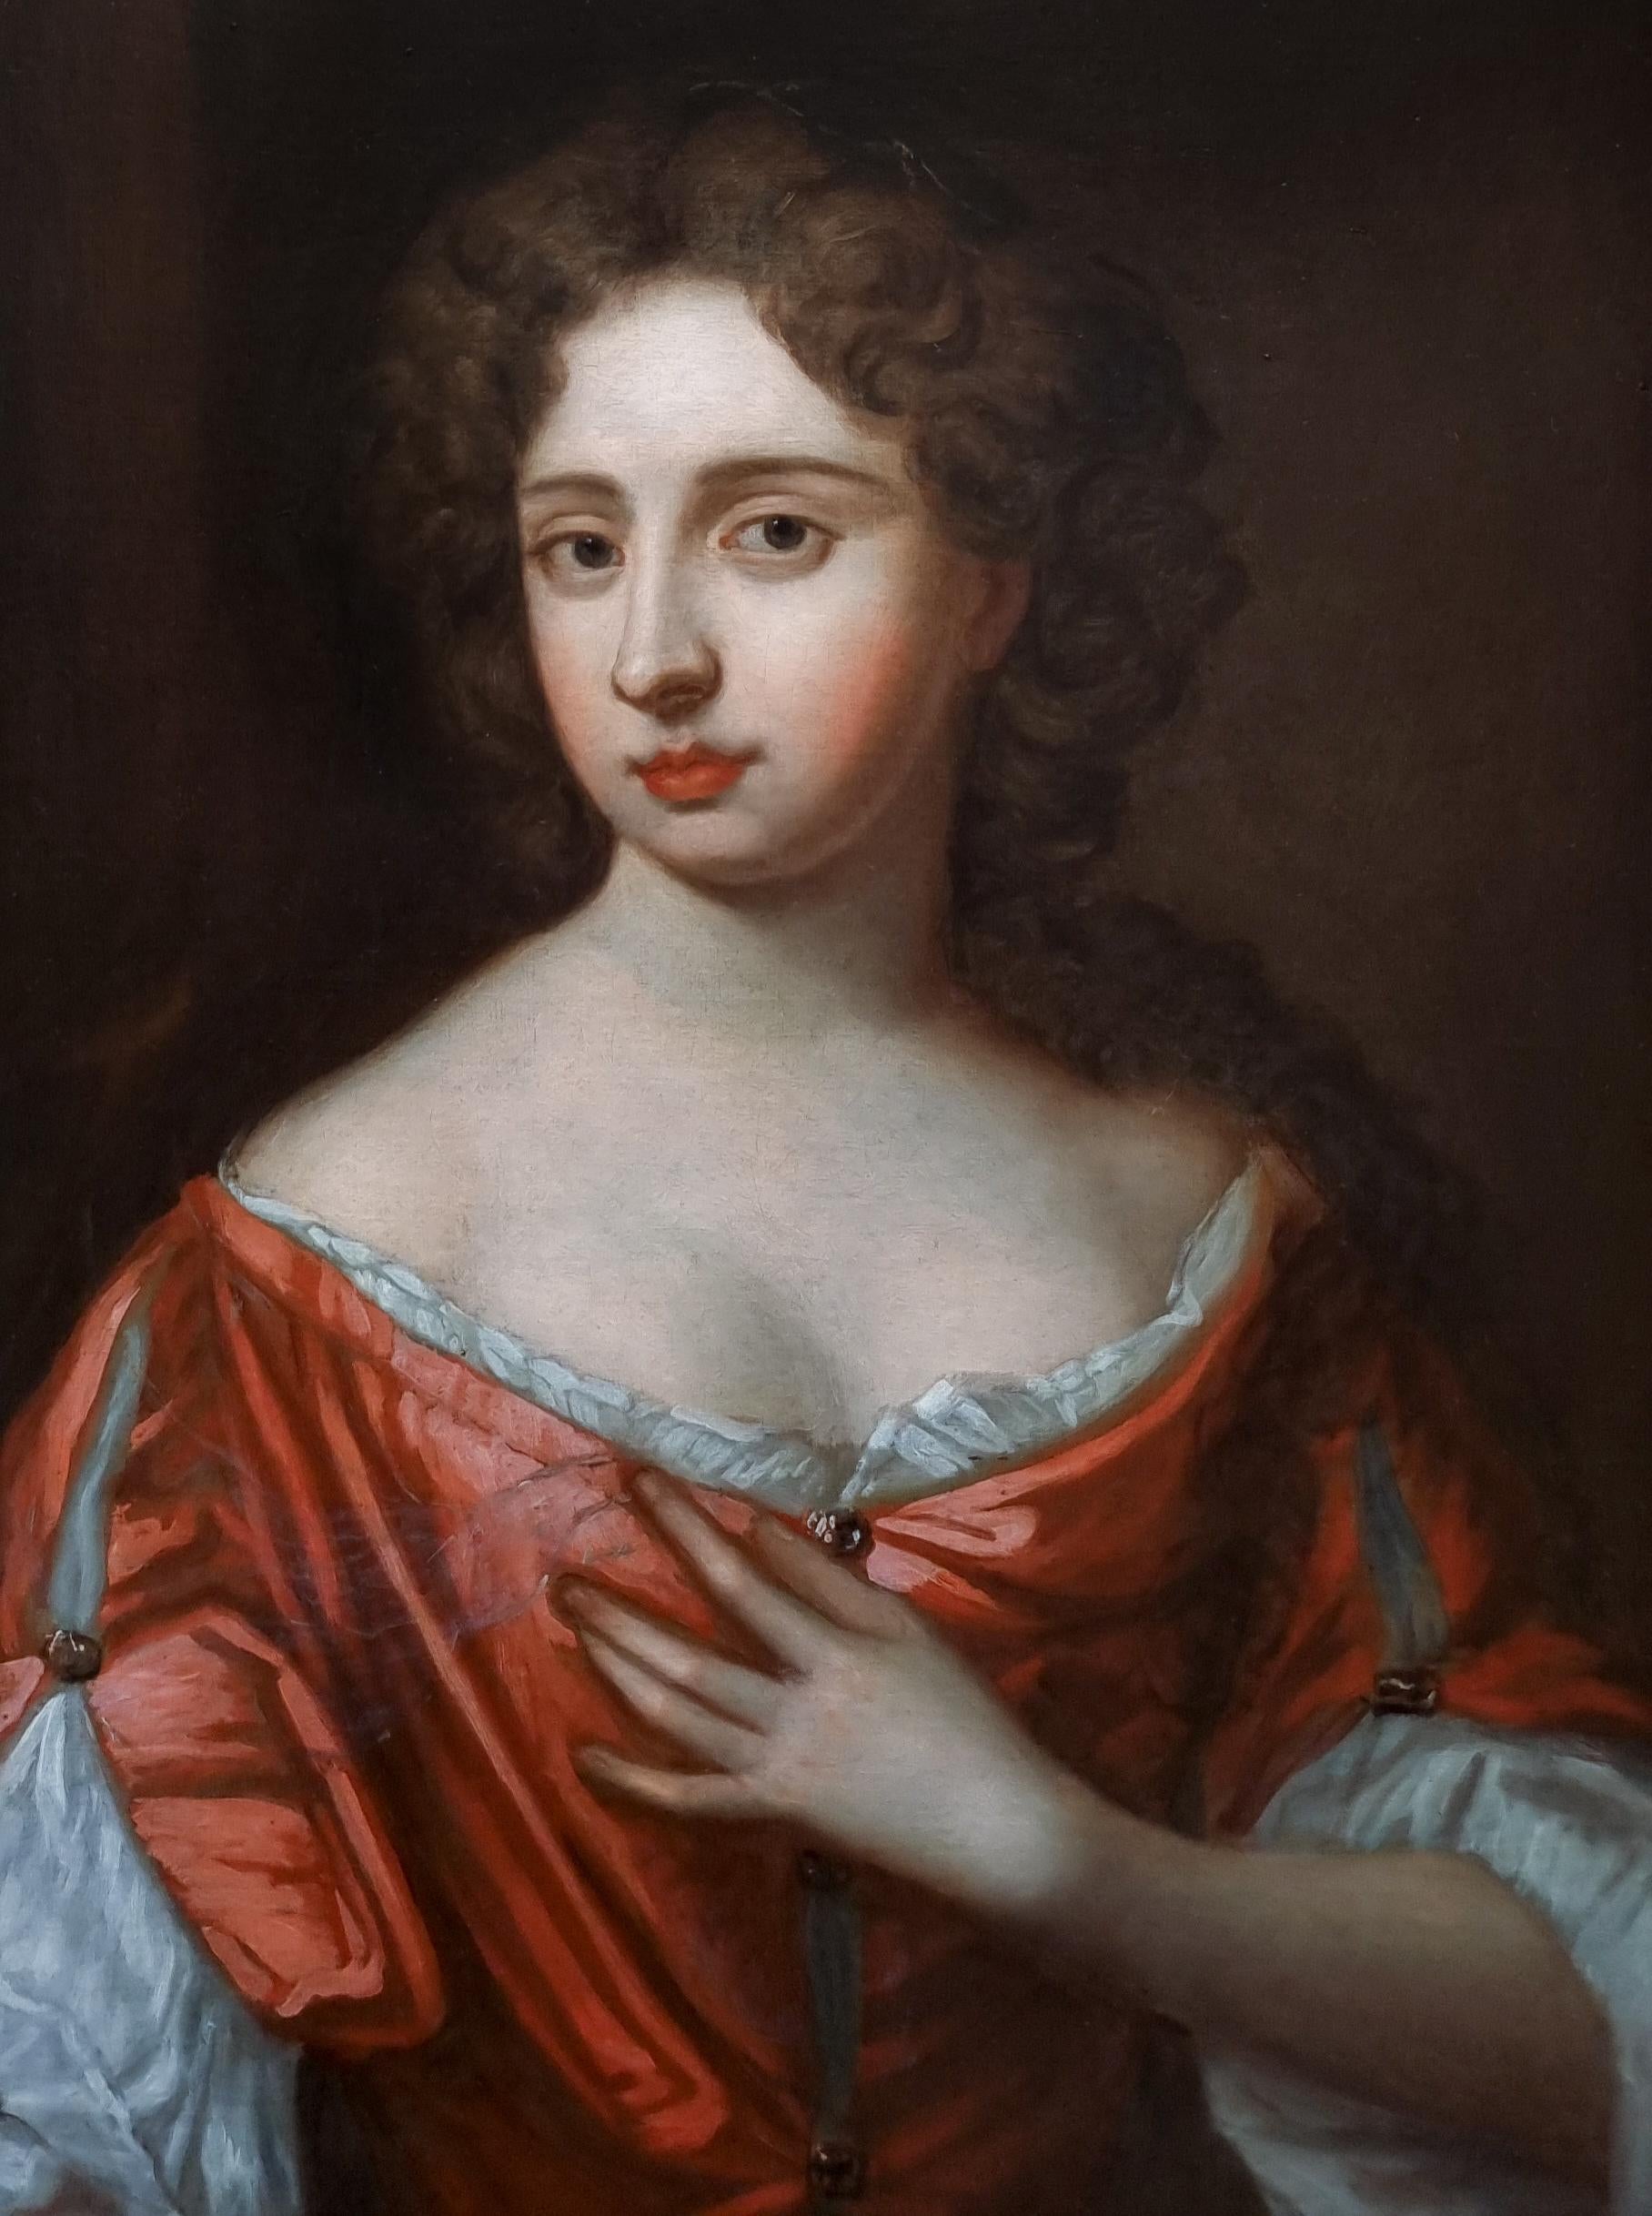 Présenté par Titan Fine Art, ce tableau faisait partie d'une collection historique d'une famille aristocratique anglaise, Lord et Lady Sandsys, dans leur magnifique demeure familiale baroque et Regency classée Grade I, Ombersley Court.  La maison